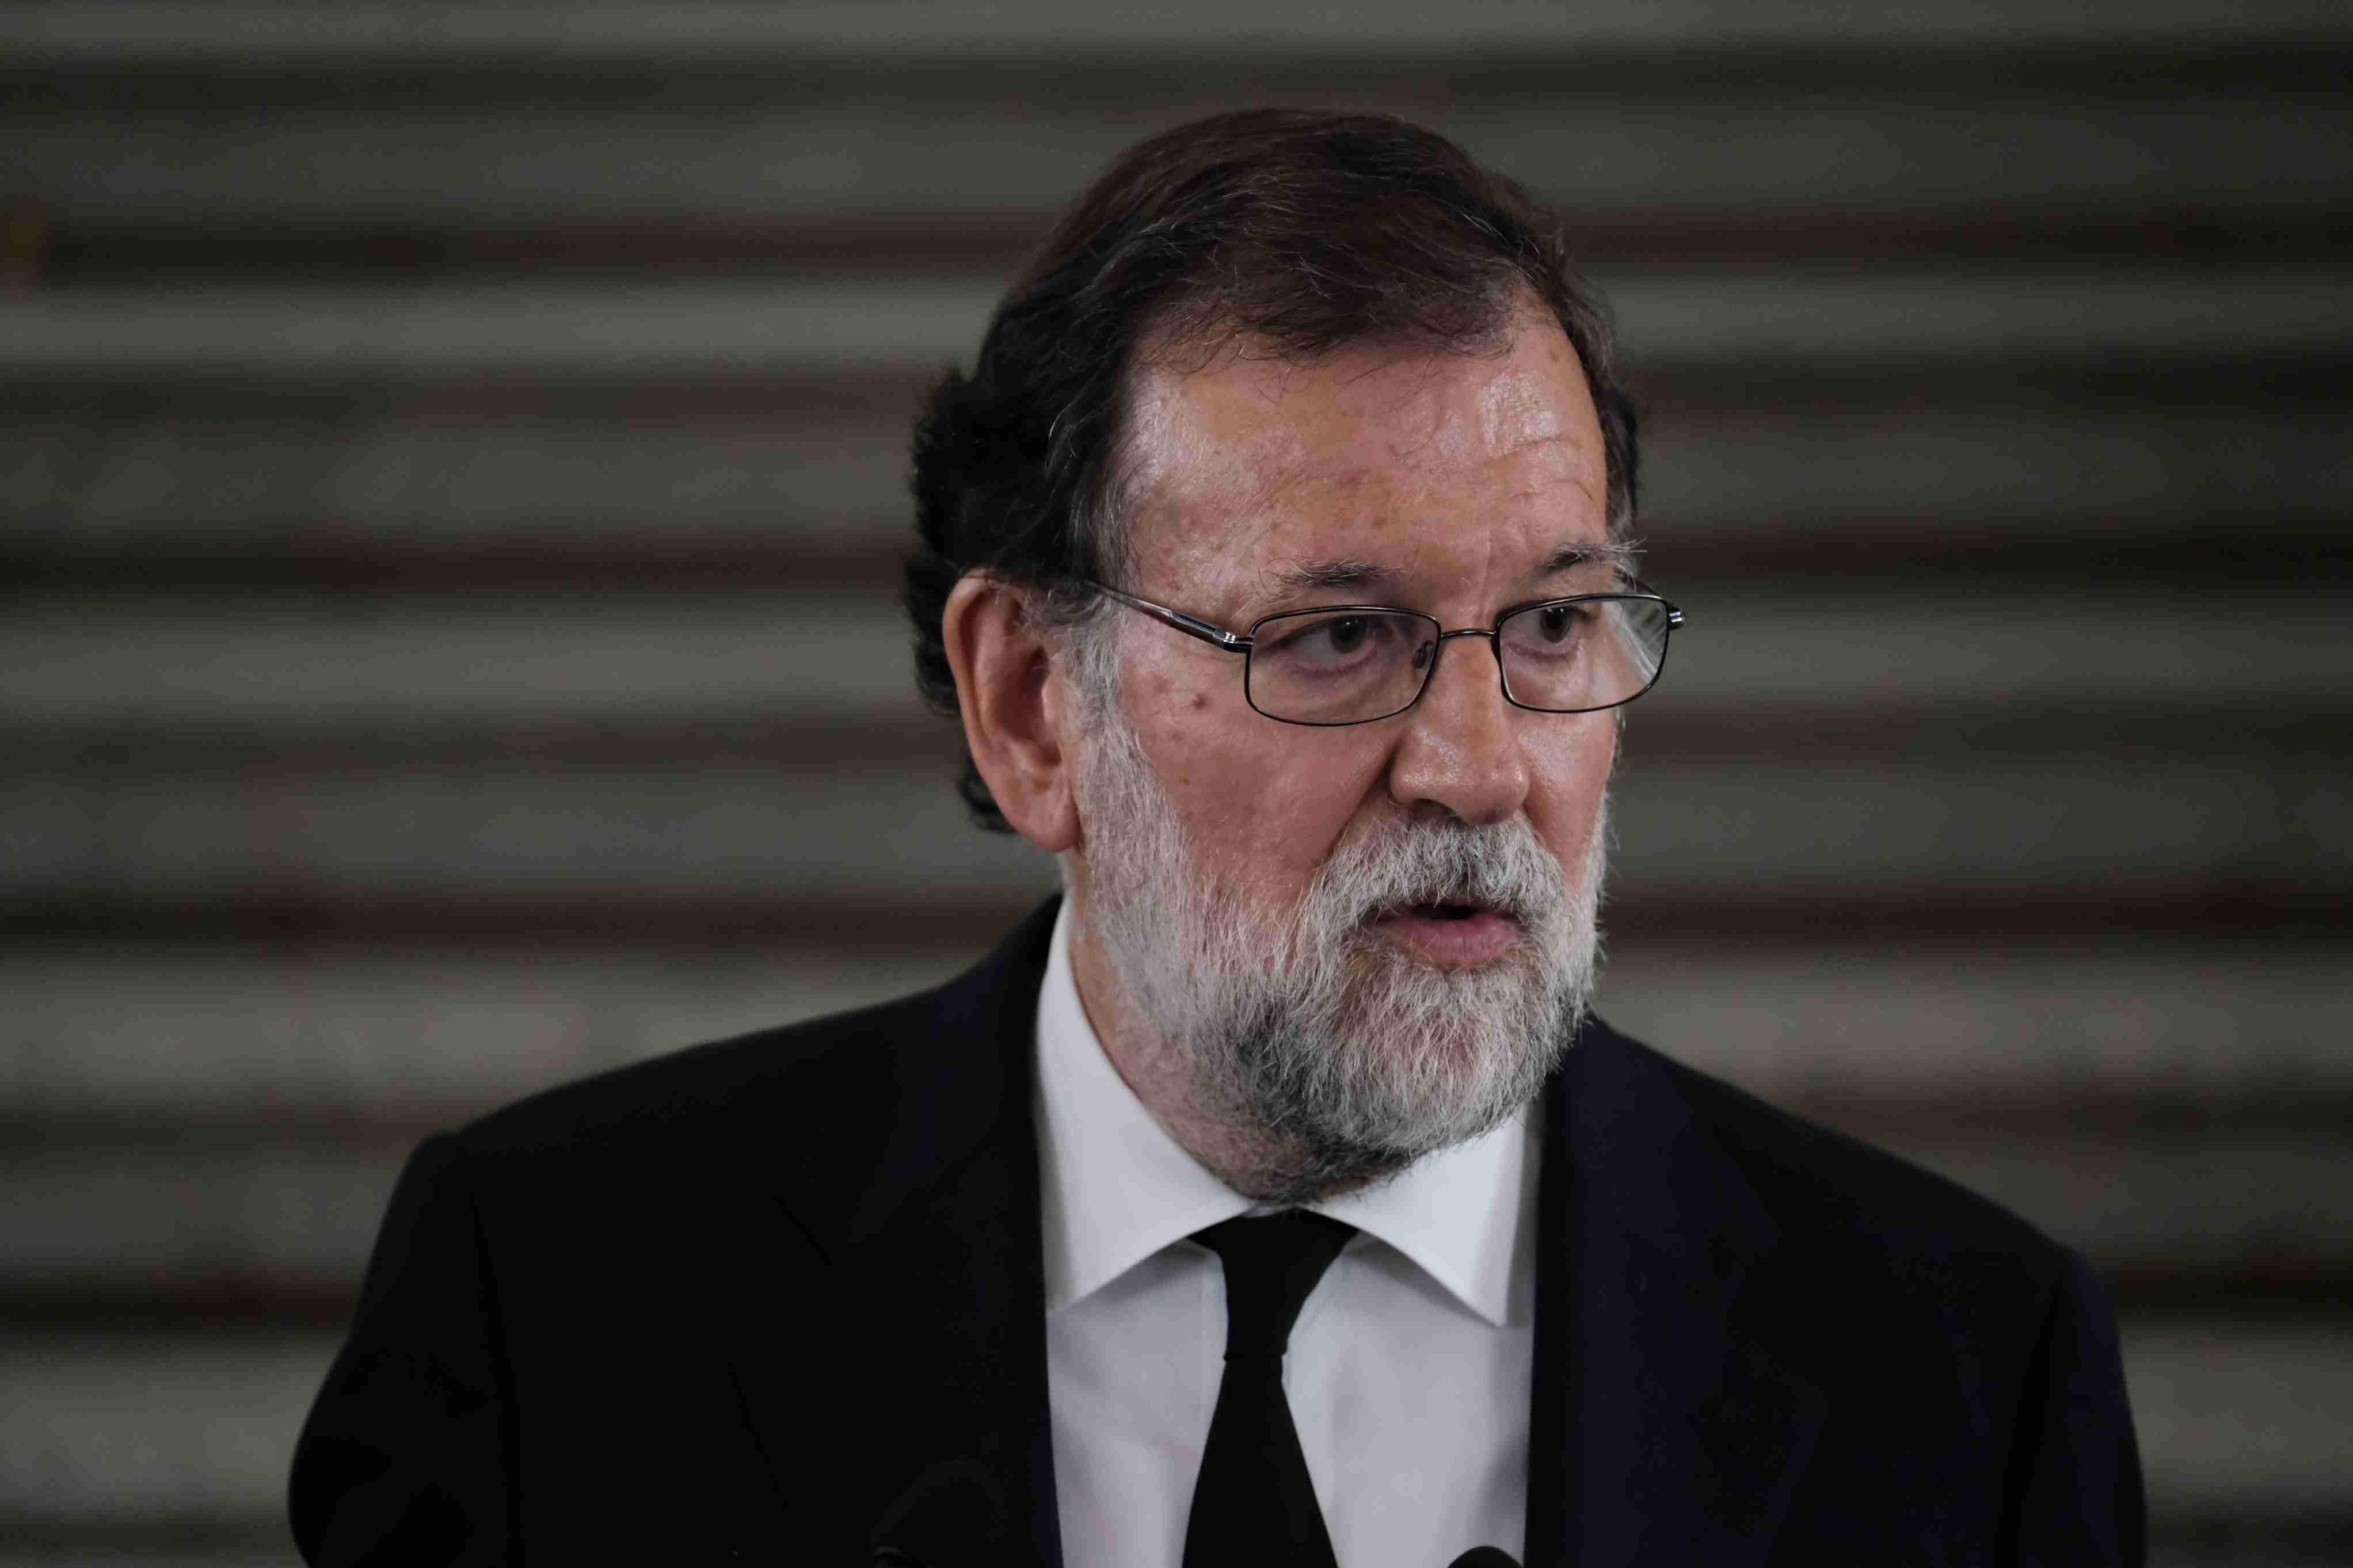 Rajoy apel·la a la unitat en la lluita contra el terrorisme